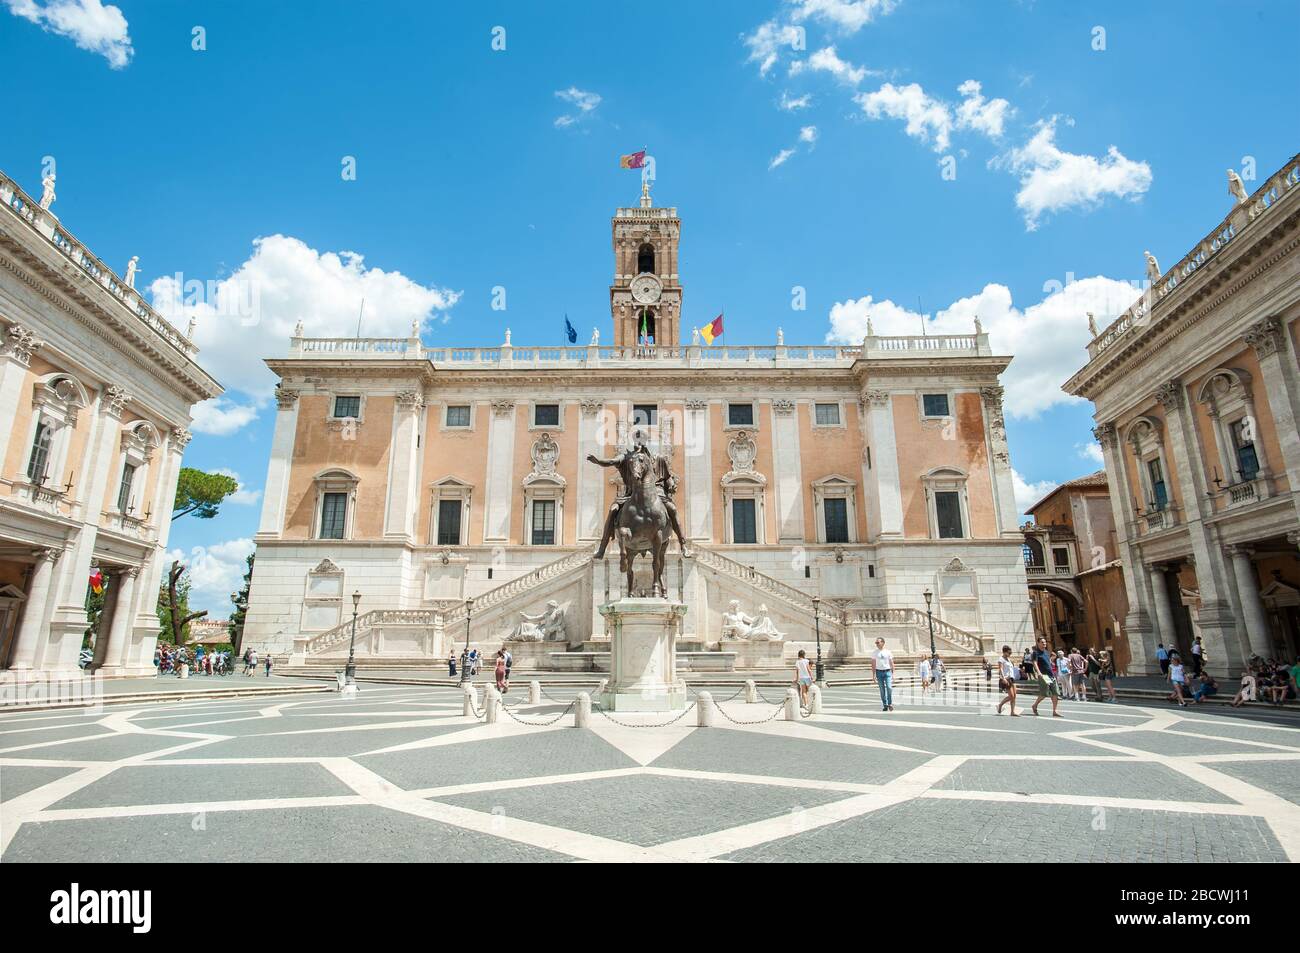 Statue of Roman Emperor Marcus Aurelius on horseback in front of the Palazzo Senatorio in the Piazza del Campidoglio, Rome Stock Photo